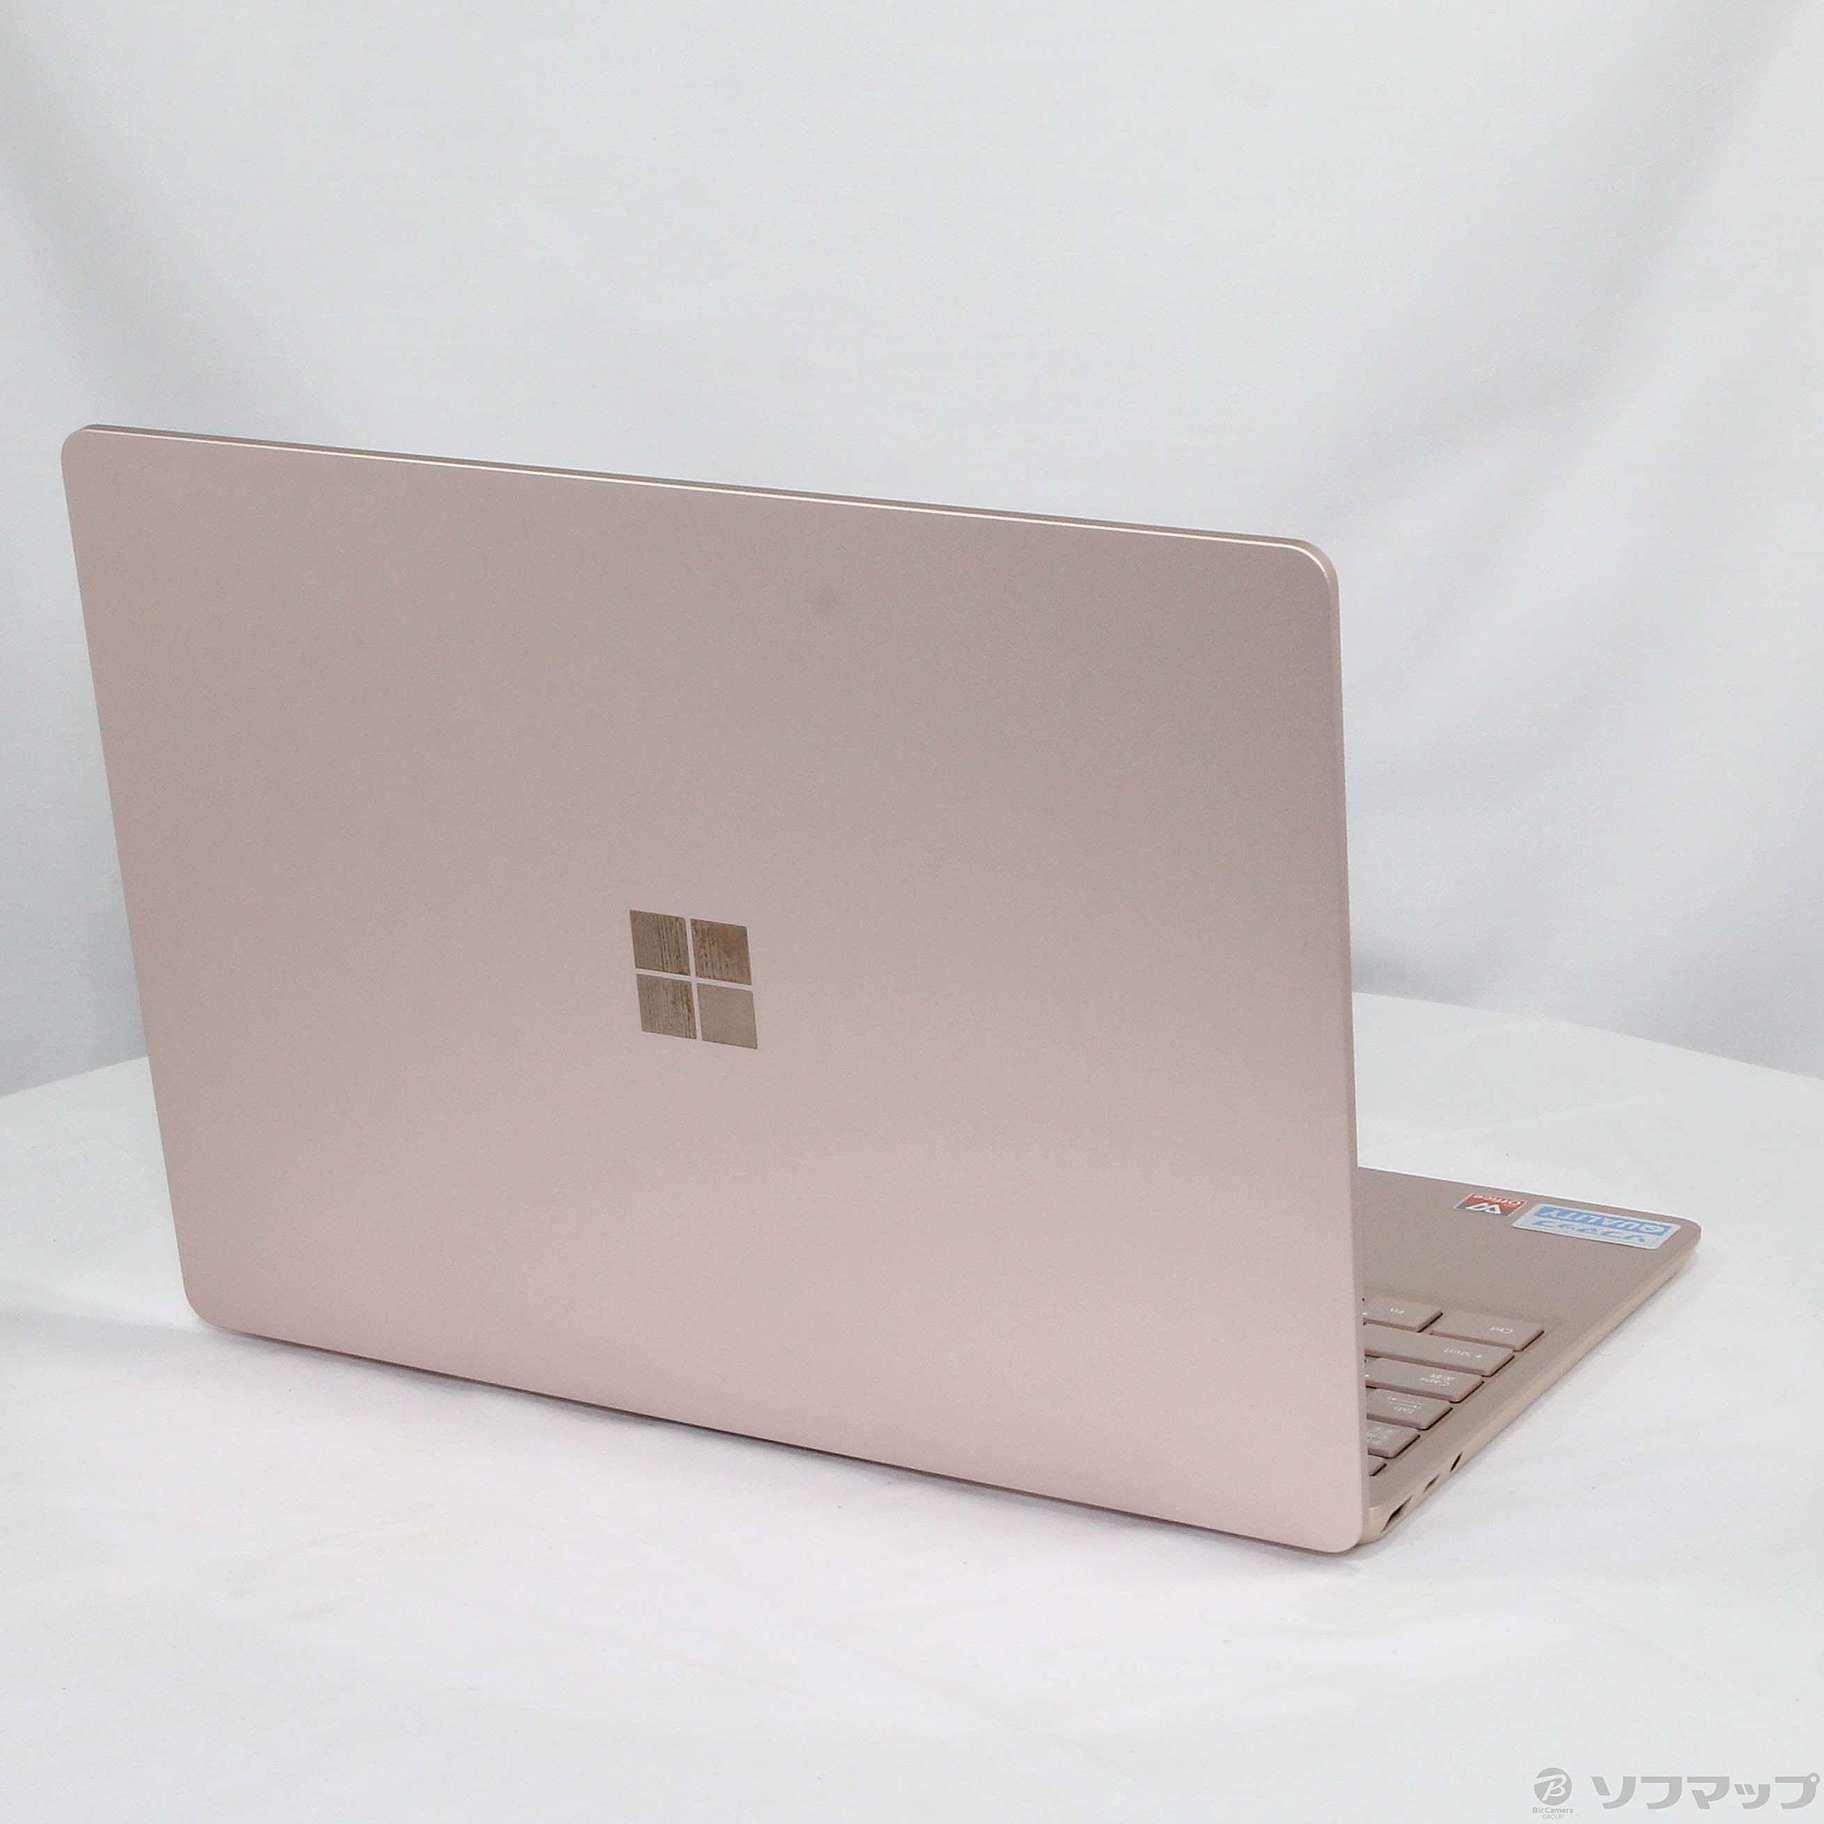 Surface Laptop Go サンドストーン THH-00045